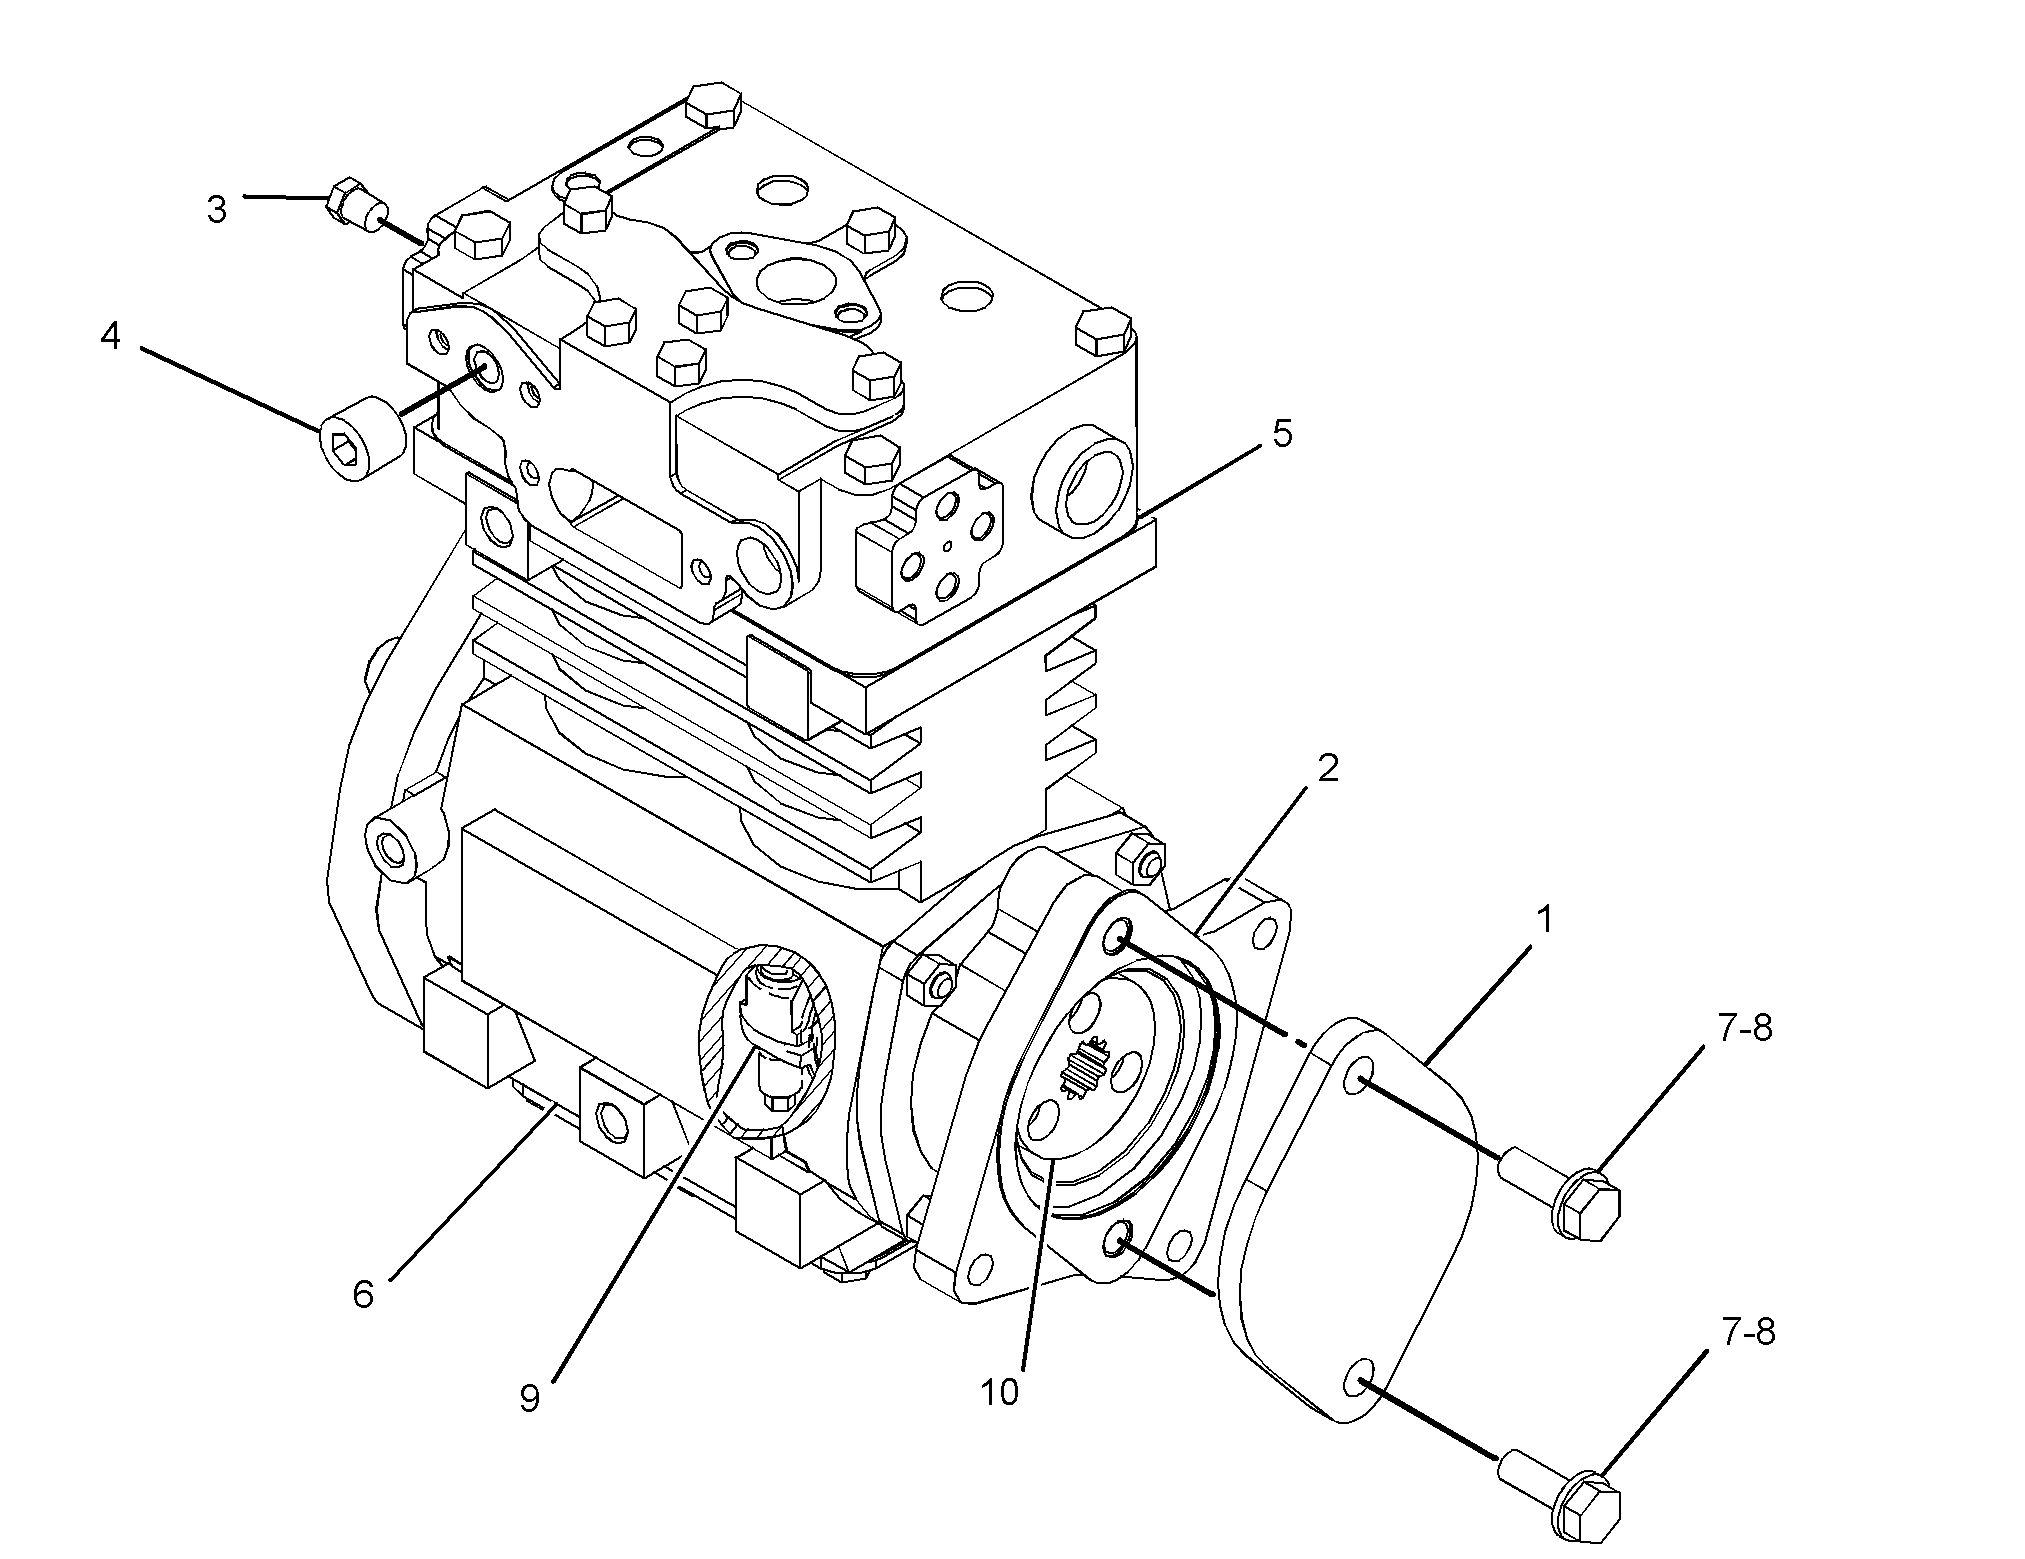 4P-5435: 空气压缩机组件